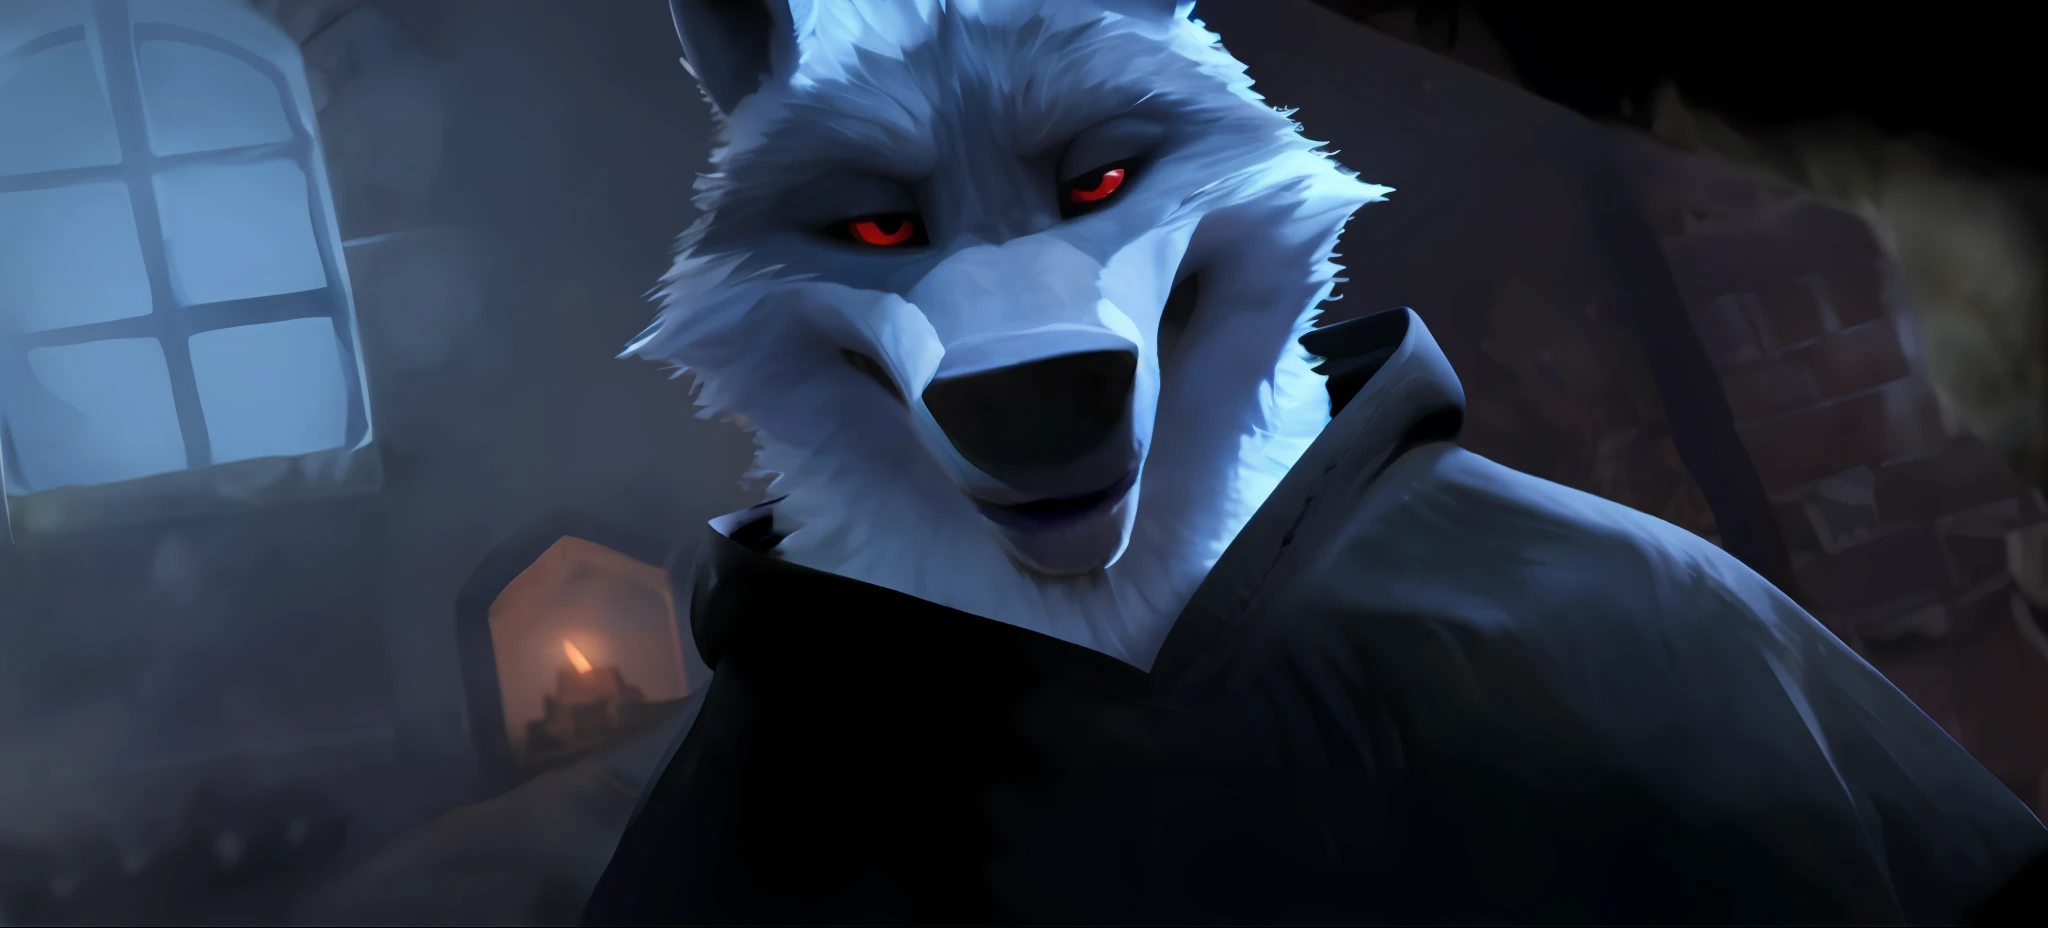 Death Wolf auf originelle und einzigartige Weise, fast das gleiche wie der Film Der gestiefelte Kater 2, der letzte Wunsch, der mit Hilfe der Unreal Engine 9 gemacht wurde, schaut den Betrachter sehr ernst und ohne Geduld an, sehr schöne rote Augen;